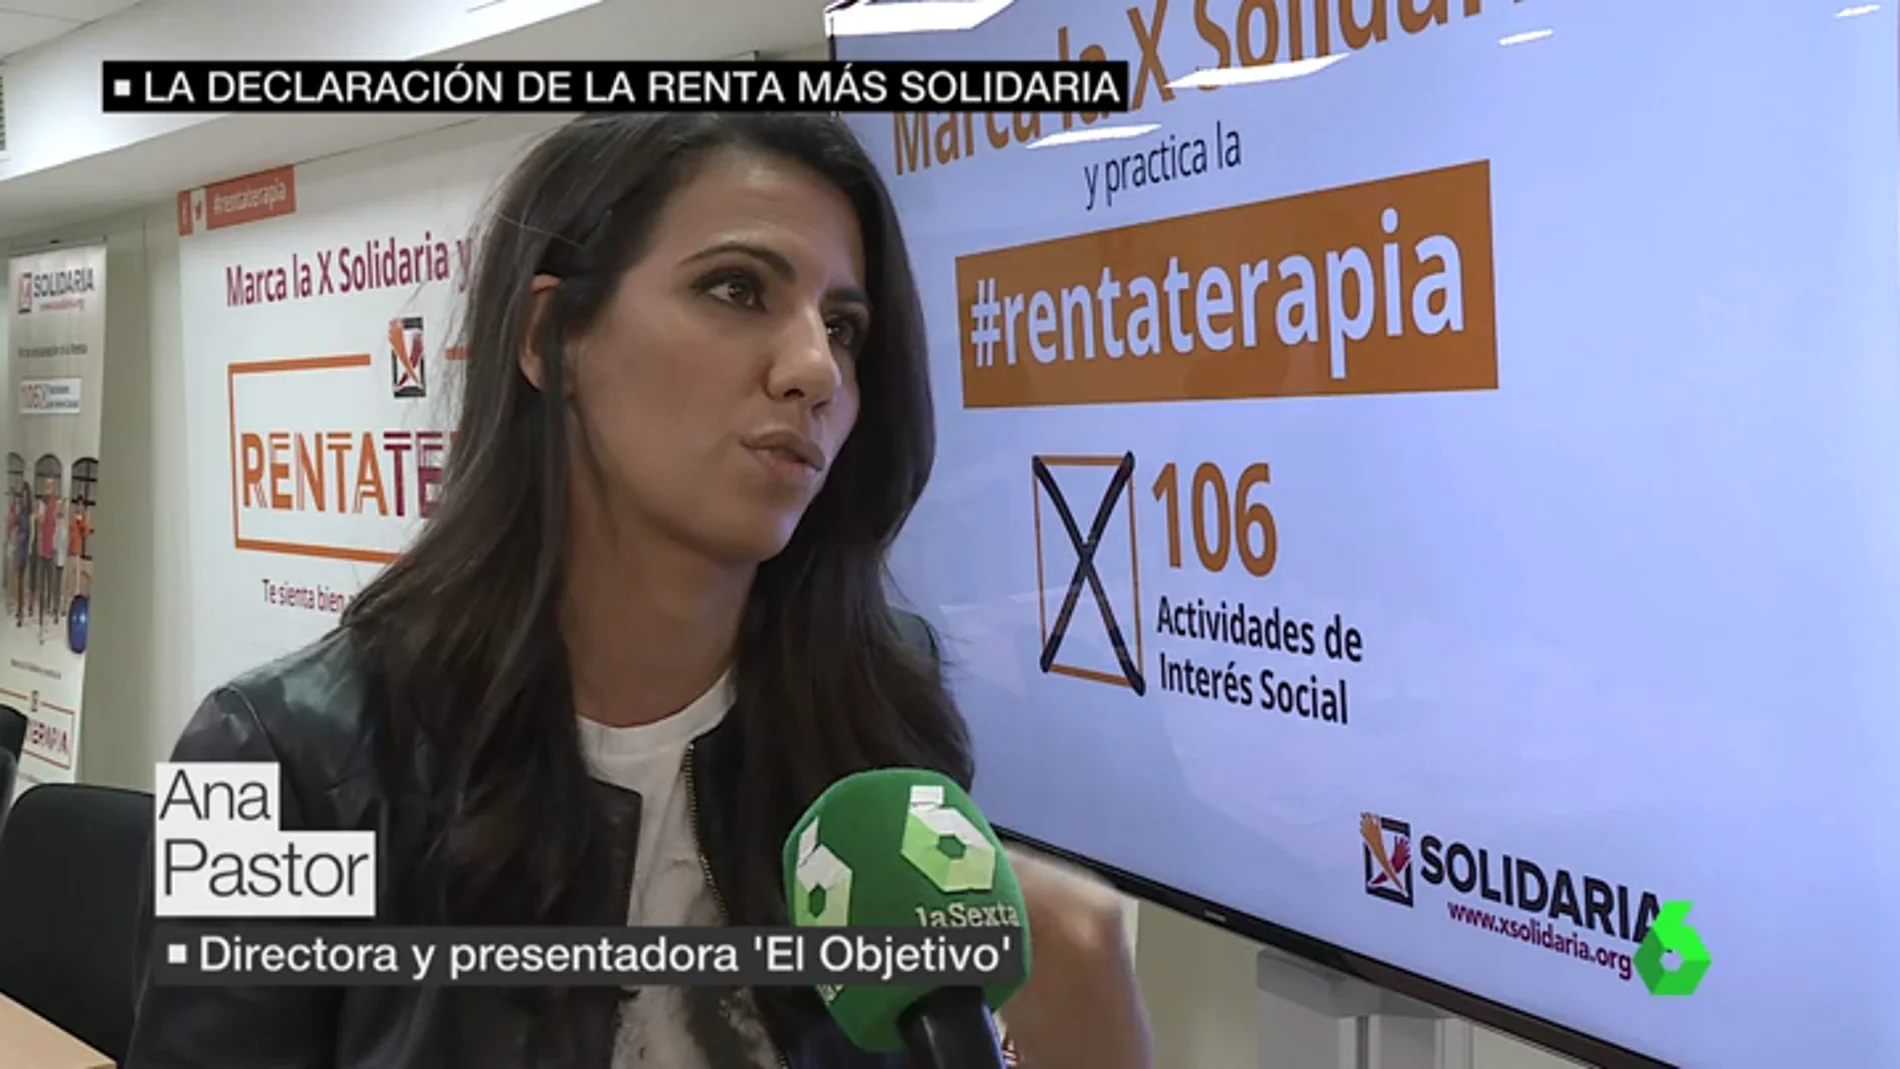  Ana Pastor sobre la 'X' solidaria: "Es parte de nuestra renta que va a gente que todavía está fuera del sistema y que necesita nuestra ayuda"